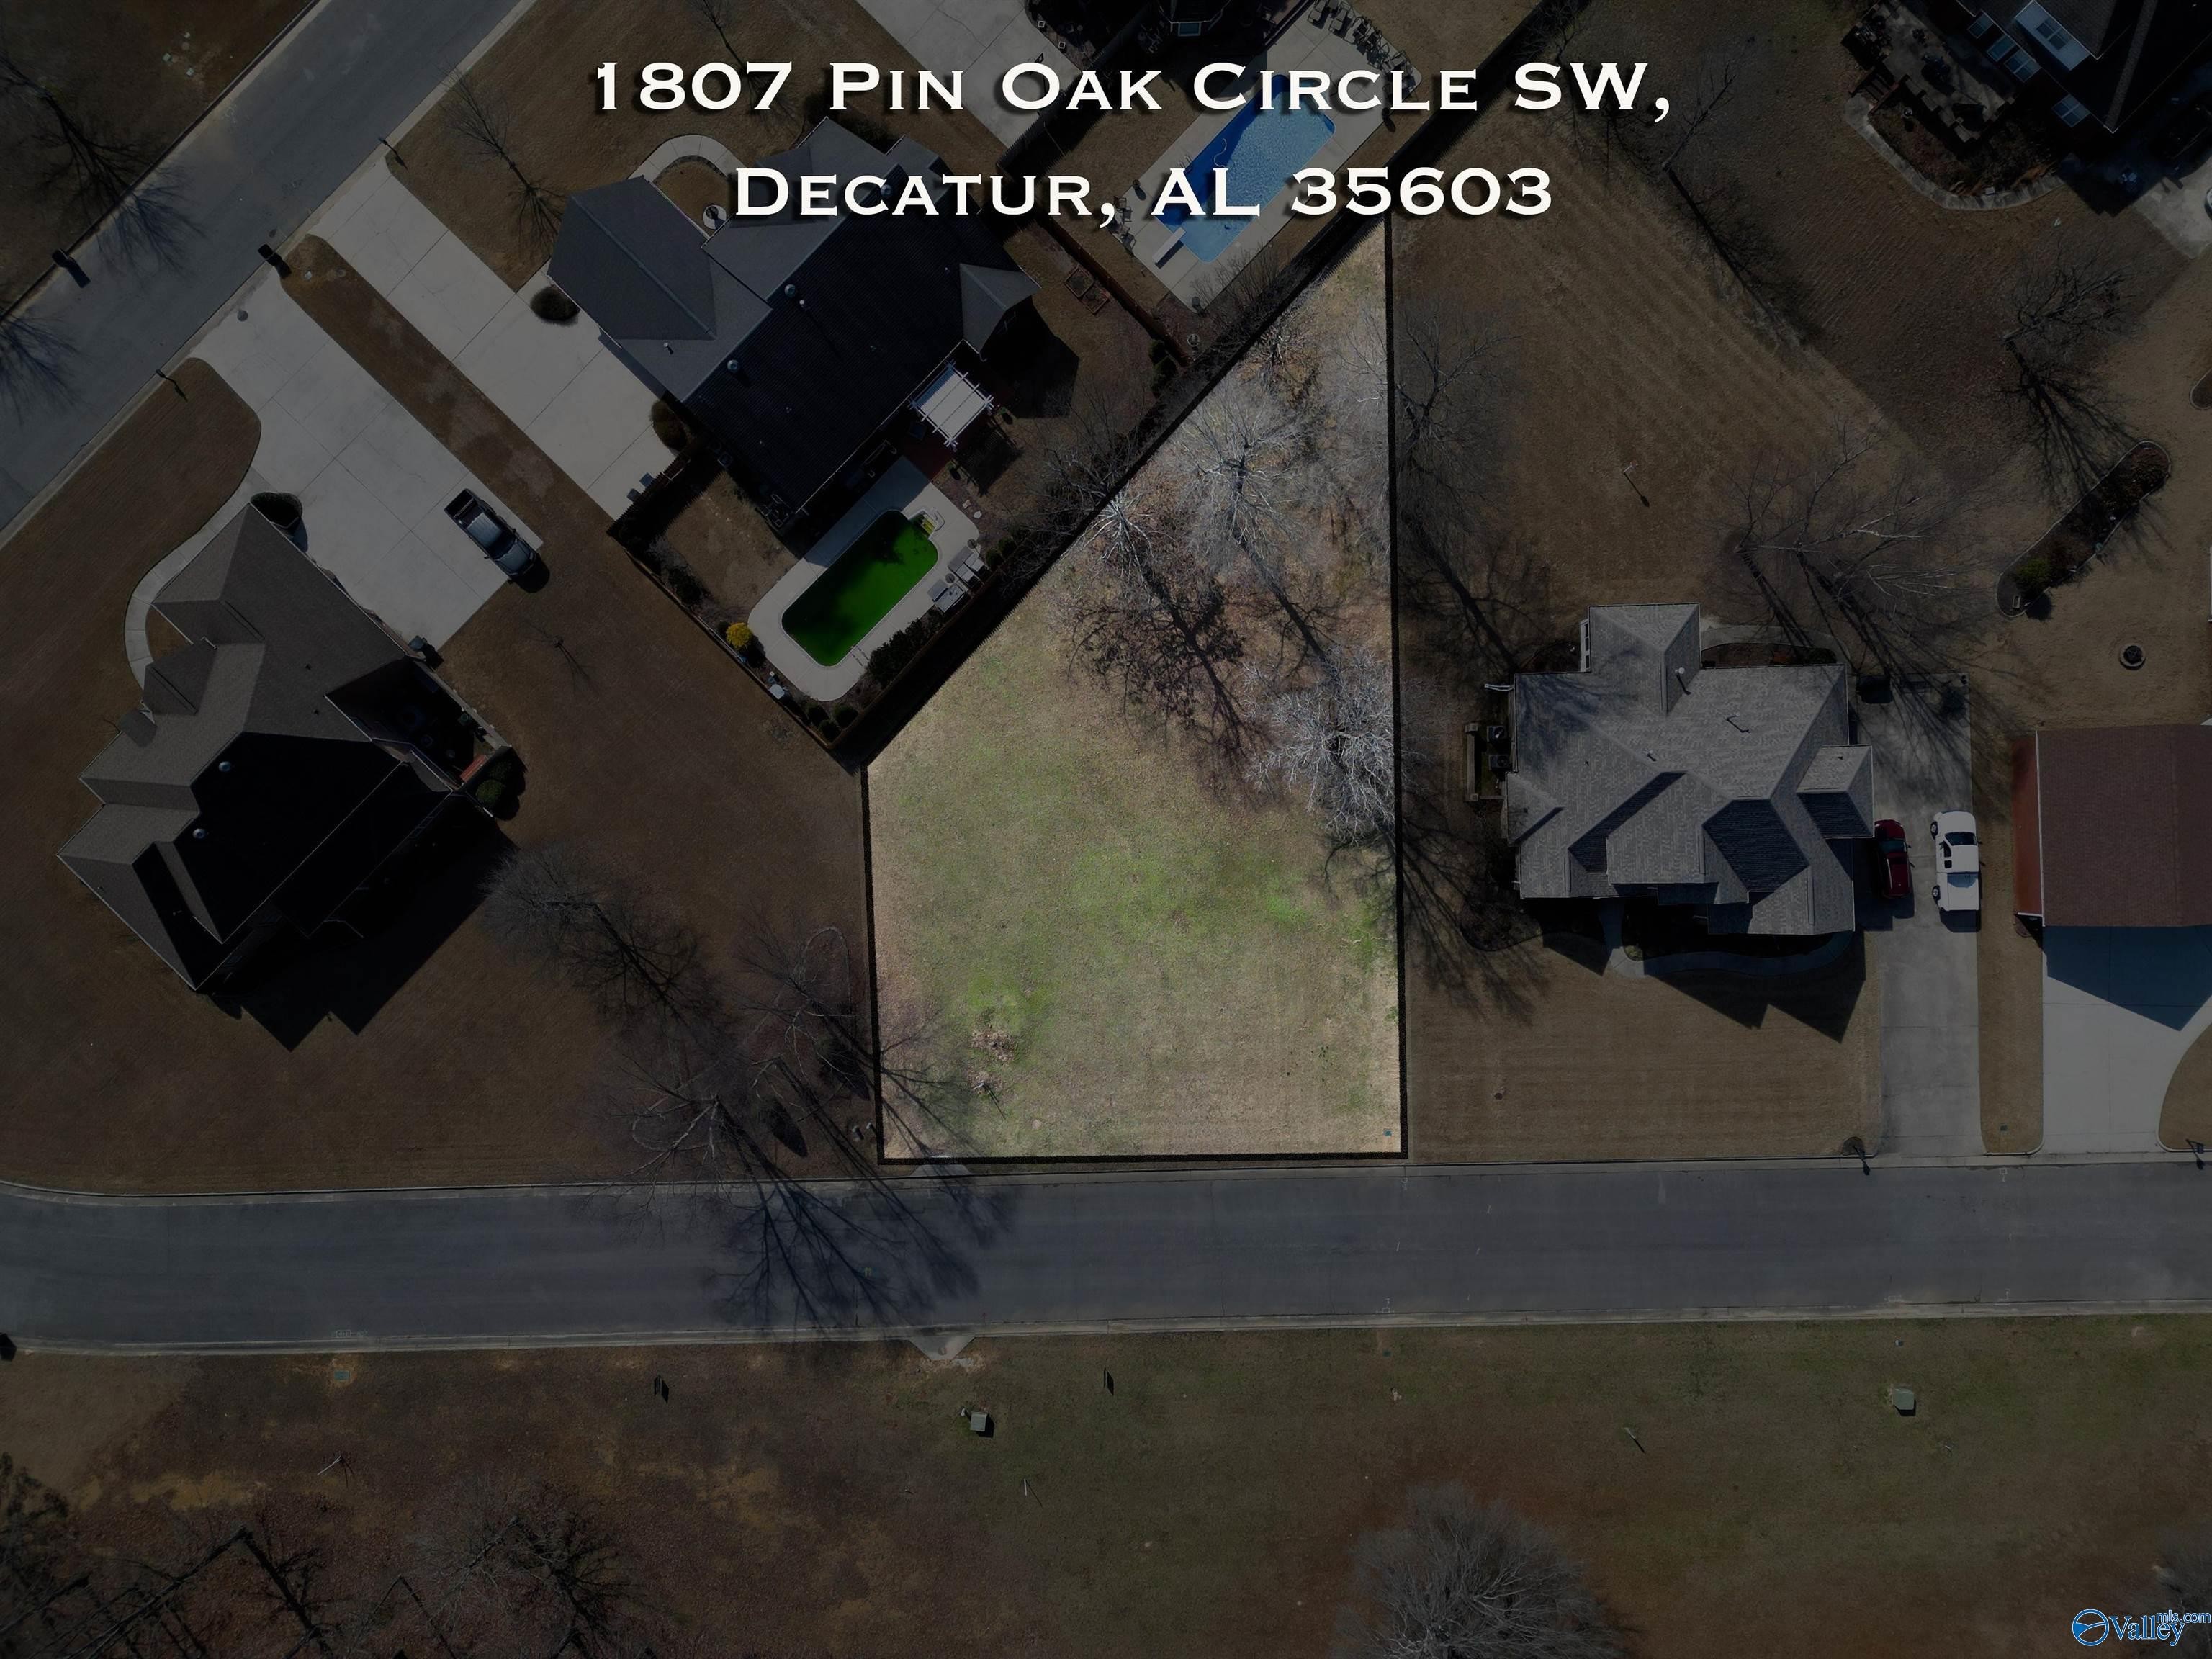 2. 1807 Pin Oak Circle SW